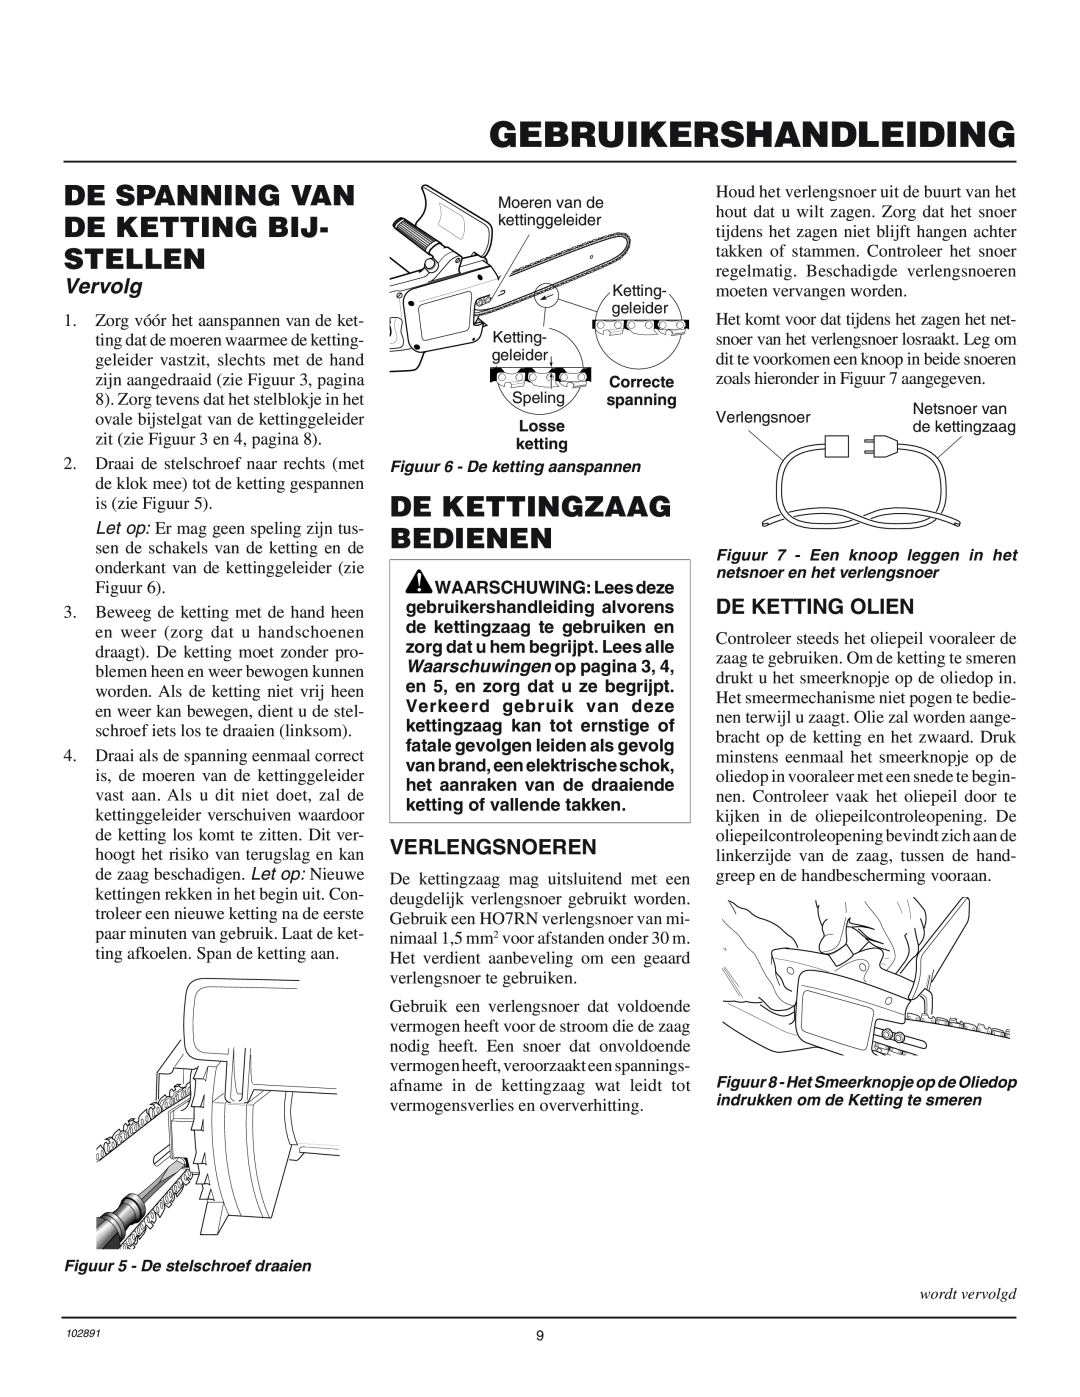 Desa 100271-01 owner manual De Kettingzaag Bedienen, Verlengsnoeren, De Ketting Olien, Gebruikershandleiding, Vervolg 